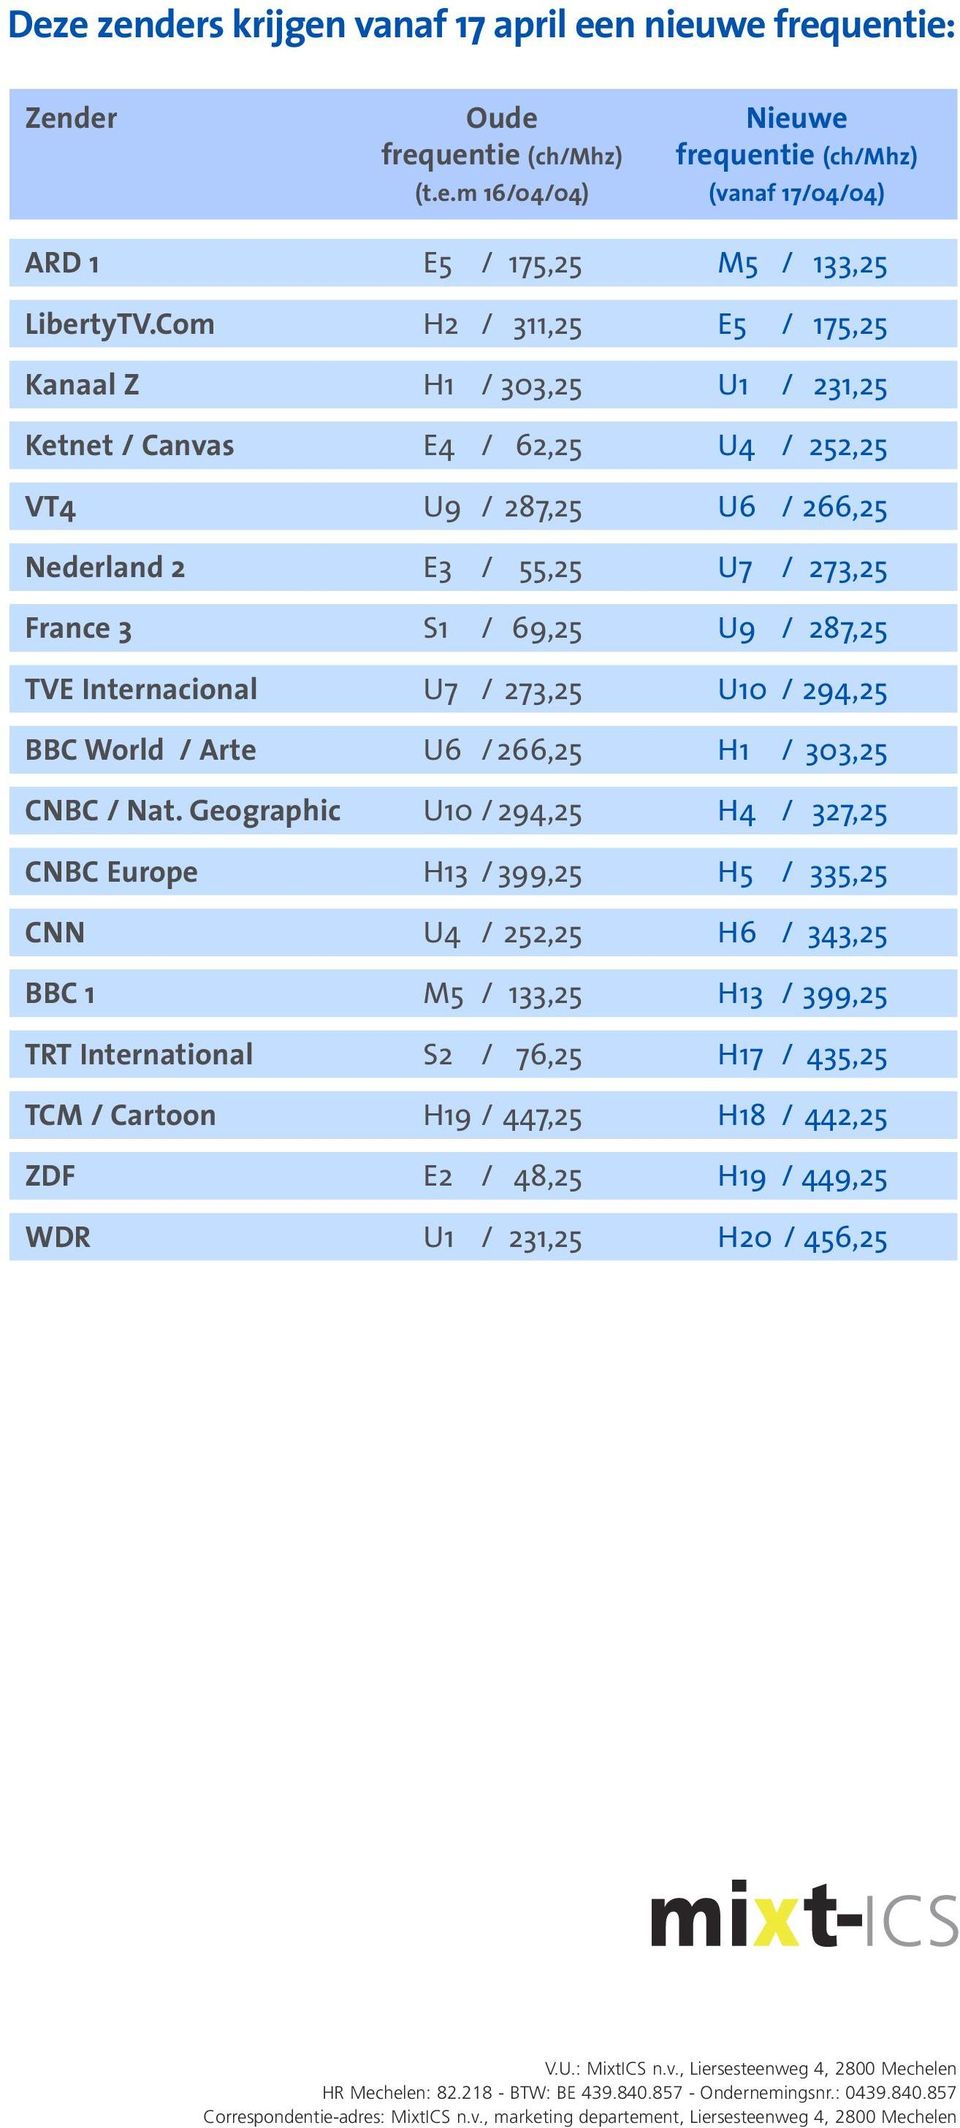 Internacional U7 / 273,25 U10 / 294,25 BBC World / Arte U6 / 266,25 H1 / 303,25 CNBC / Nat.